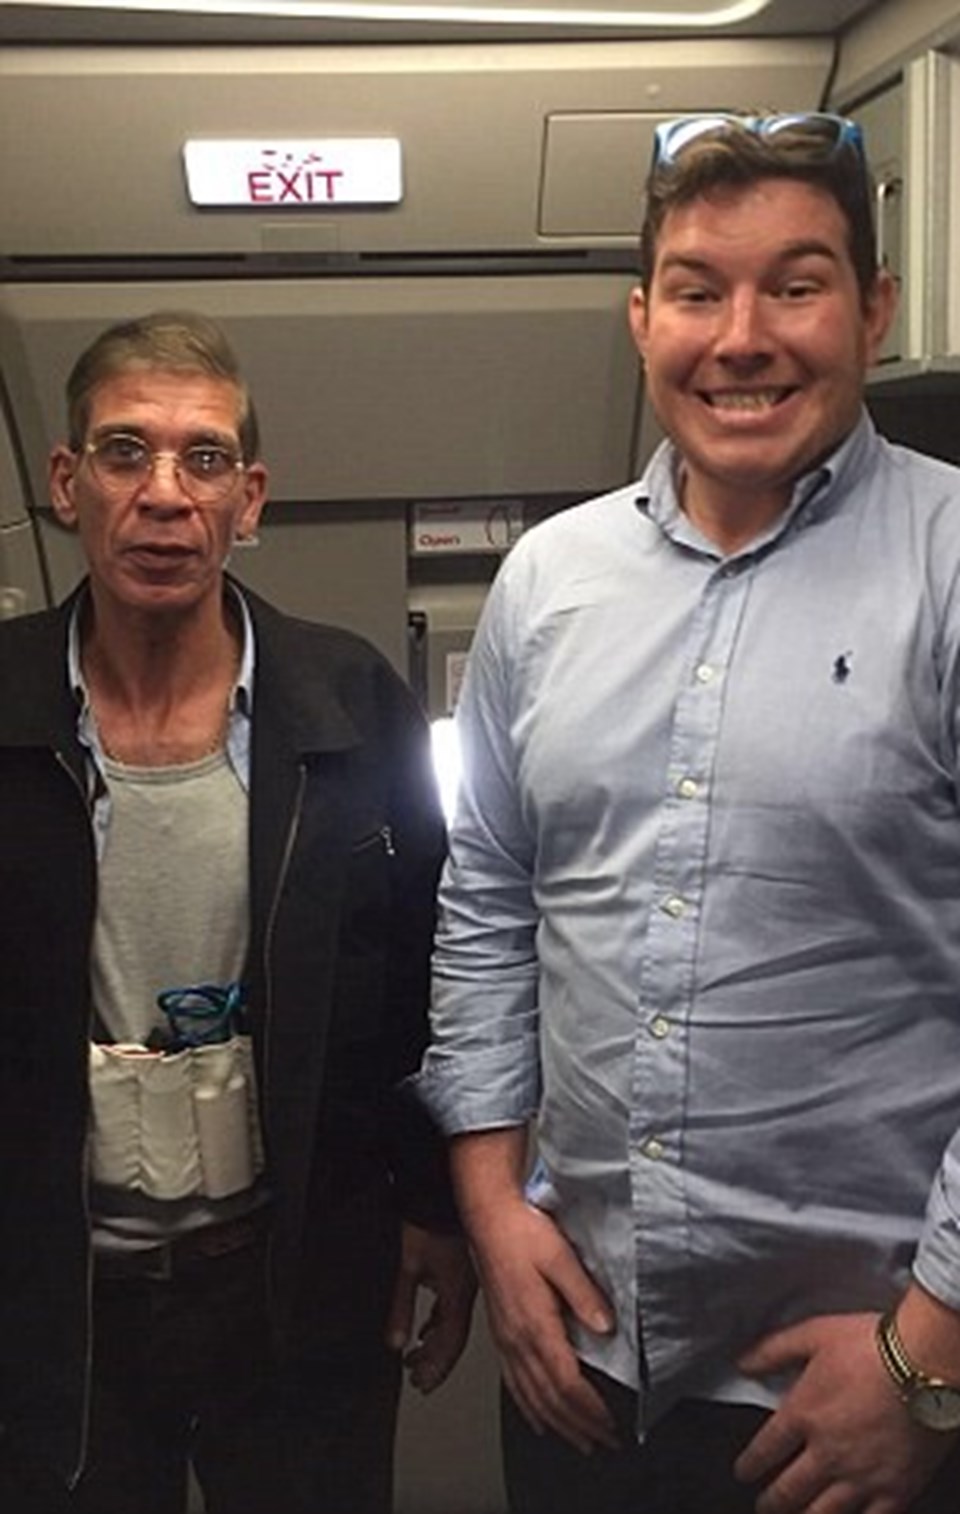 Innes, hava korsanı ile çektirdiği selfie sonrasında, uçaktan kaçarak uzaklaşan yolcular arasında da görülüyor.
